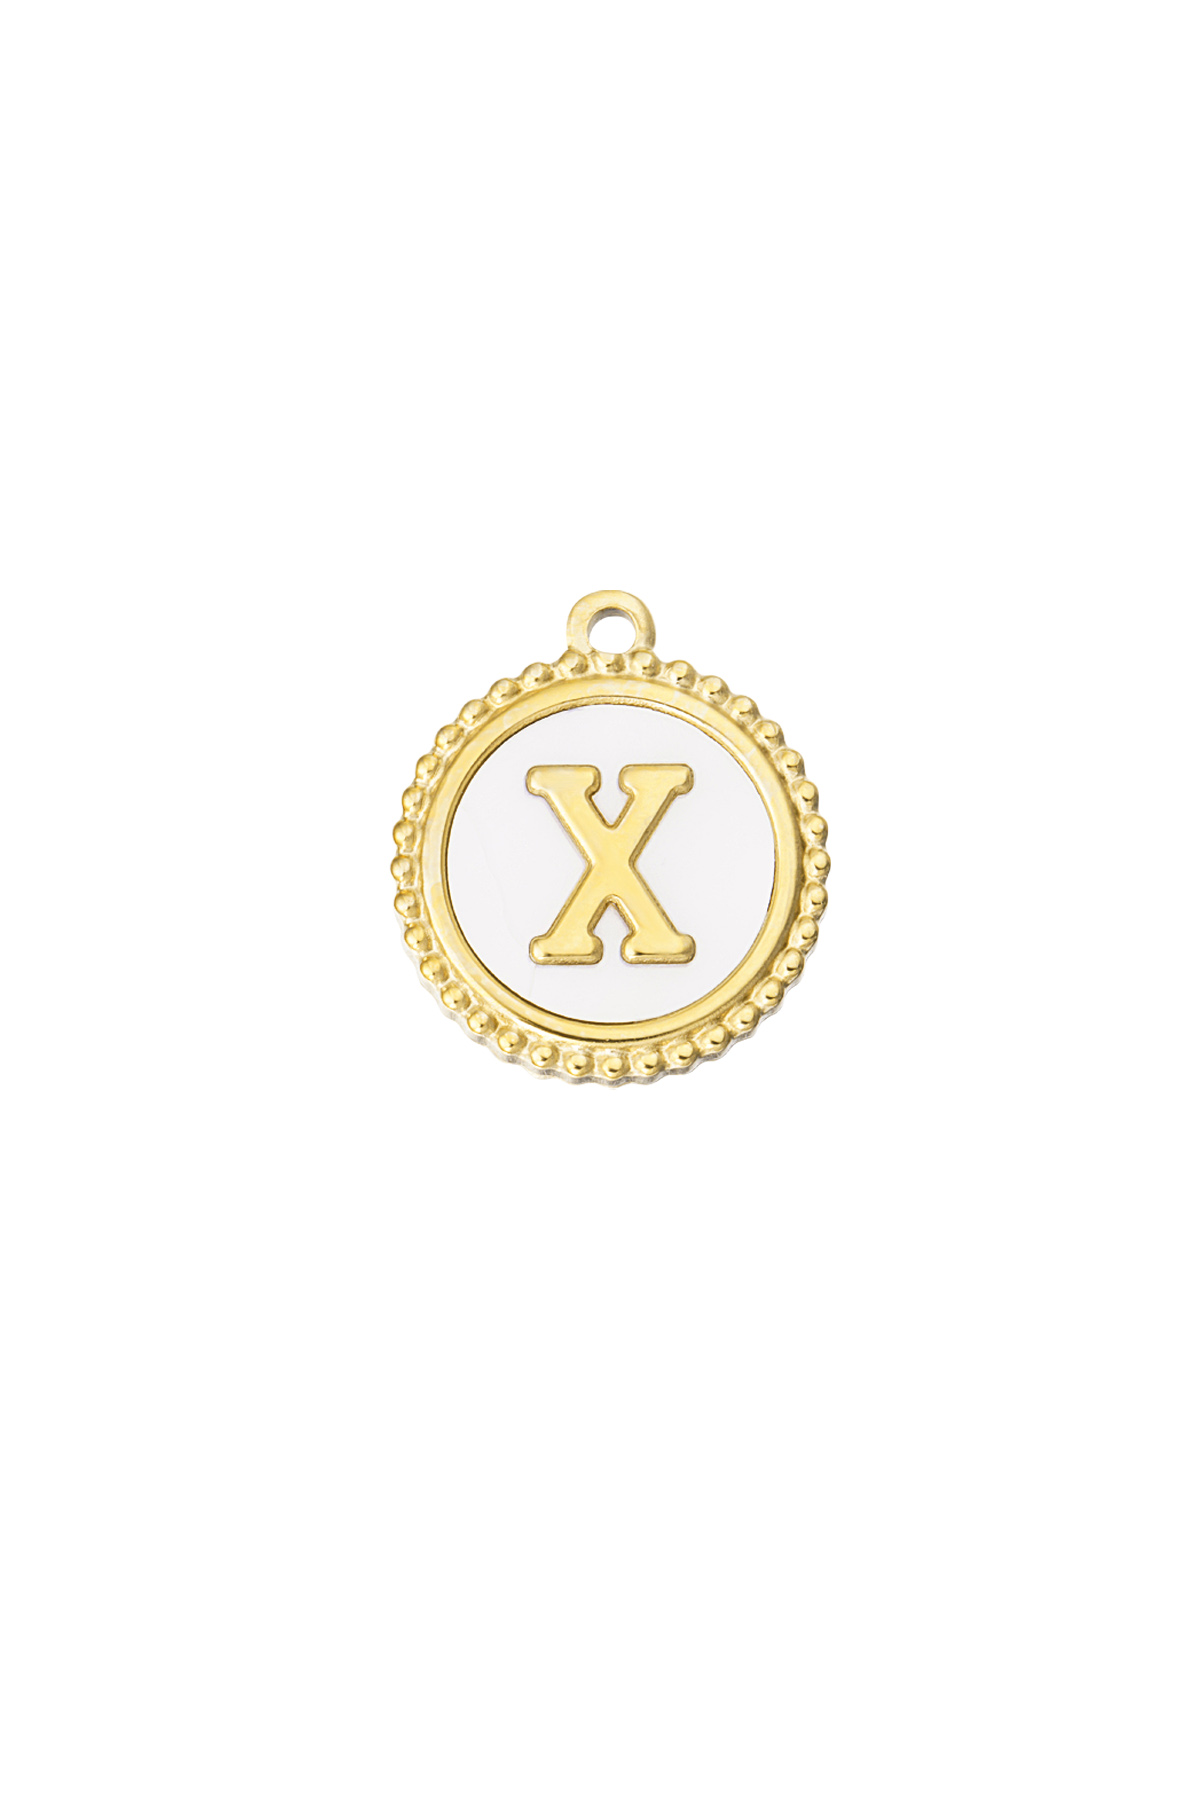 Oro / Charm elegante X - dorado/blanco Imagen21